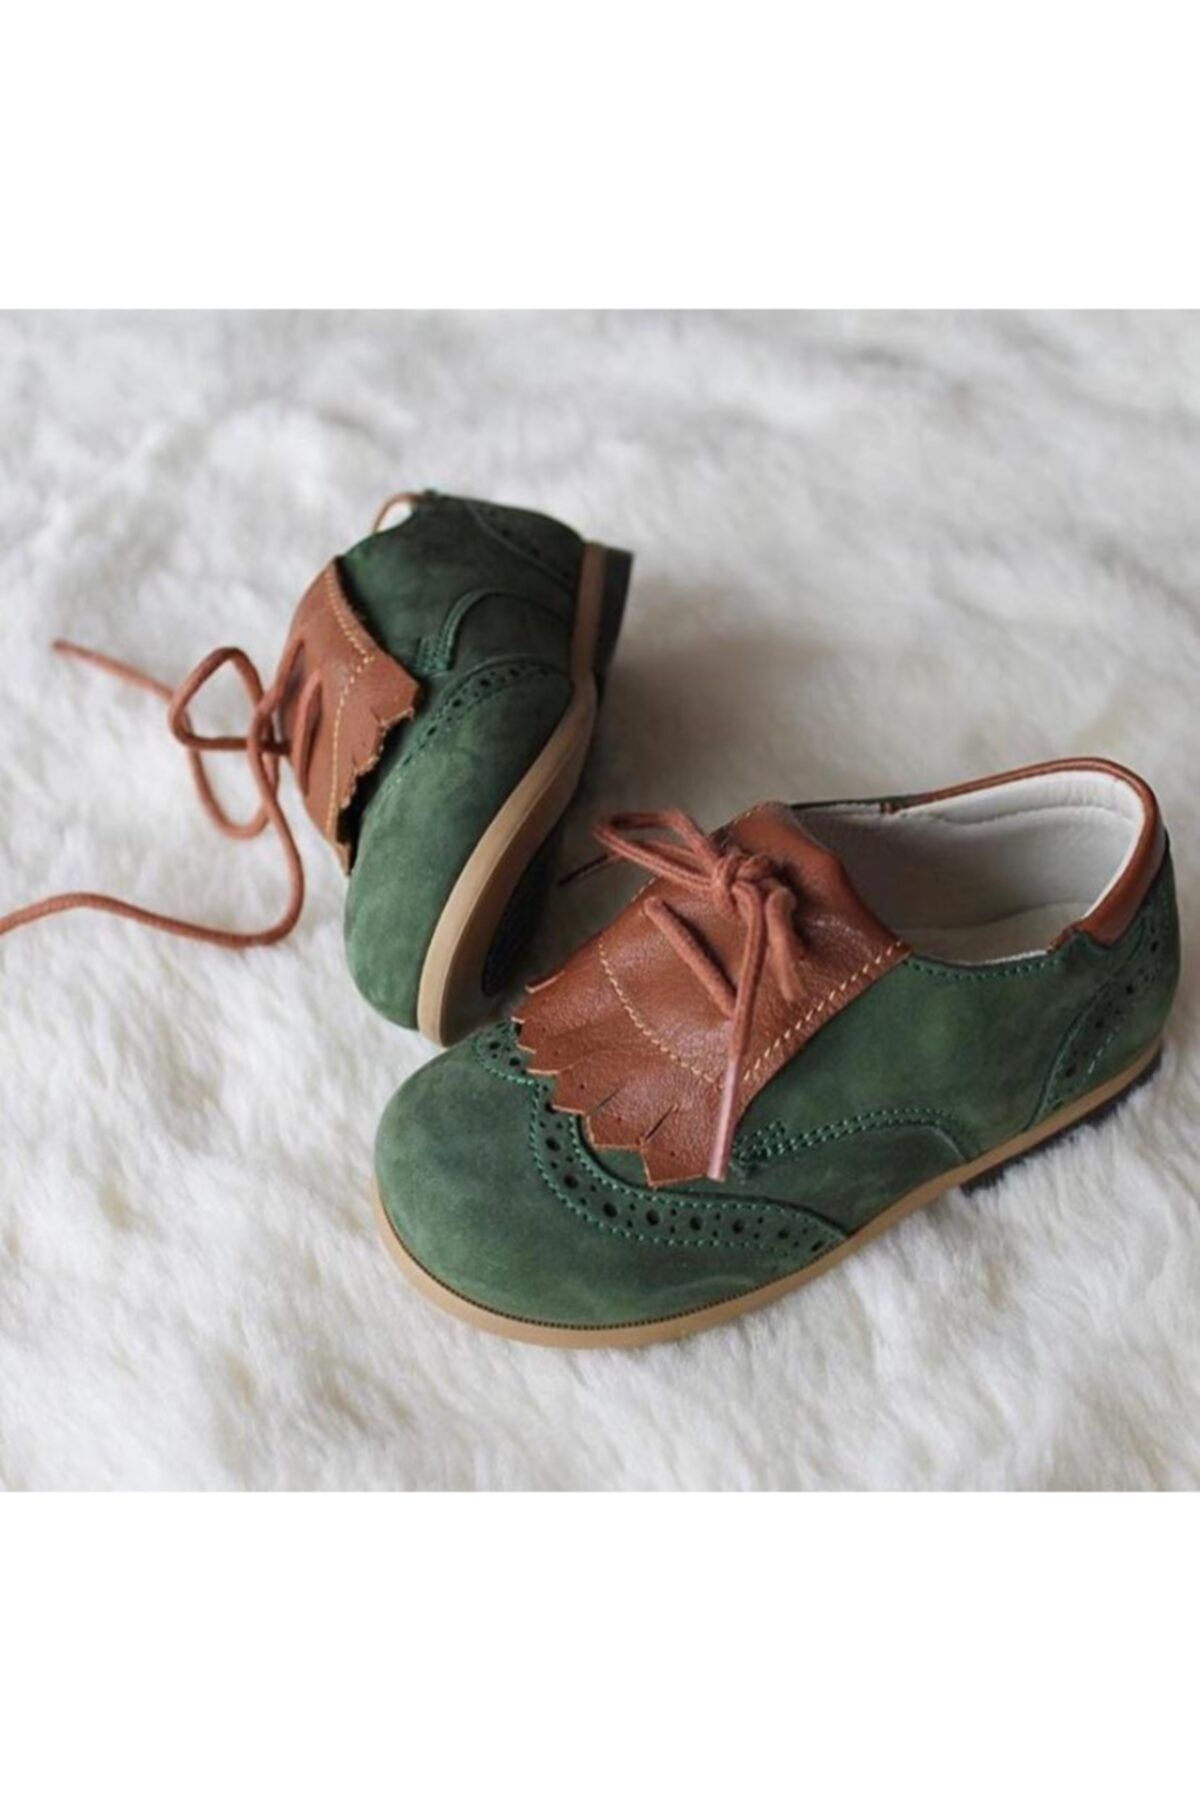 Bebbini Oxford el Yapımı Yeşil Taba Püsküllü Çocuk Ayakkabısı